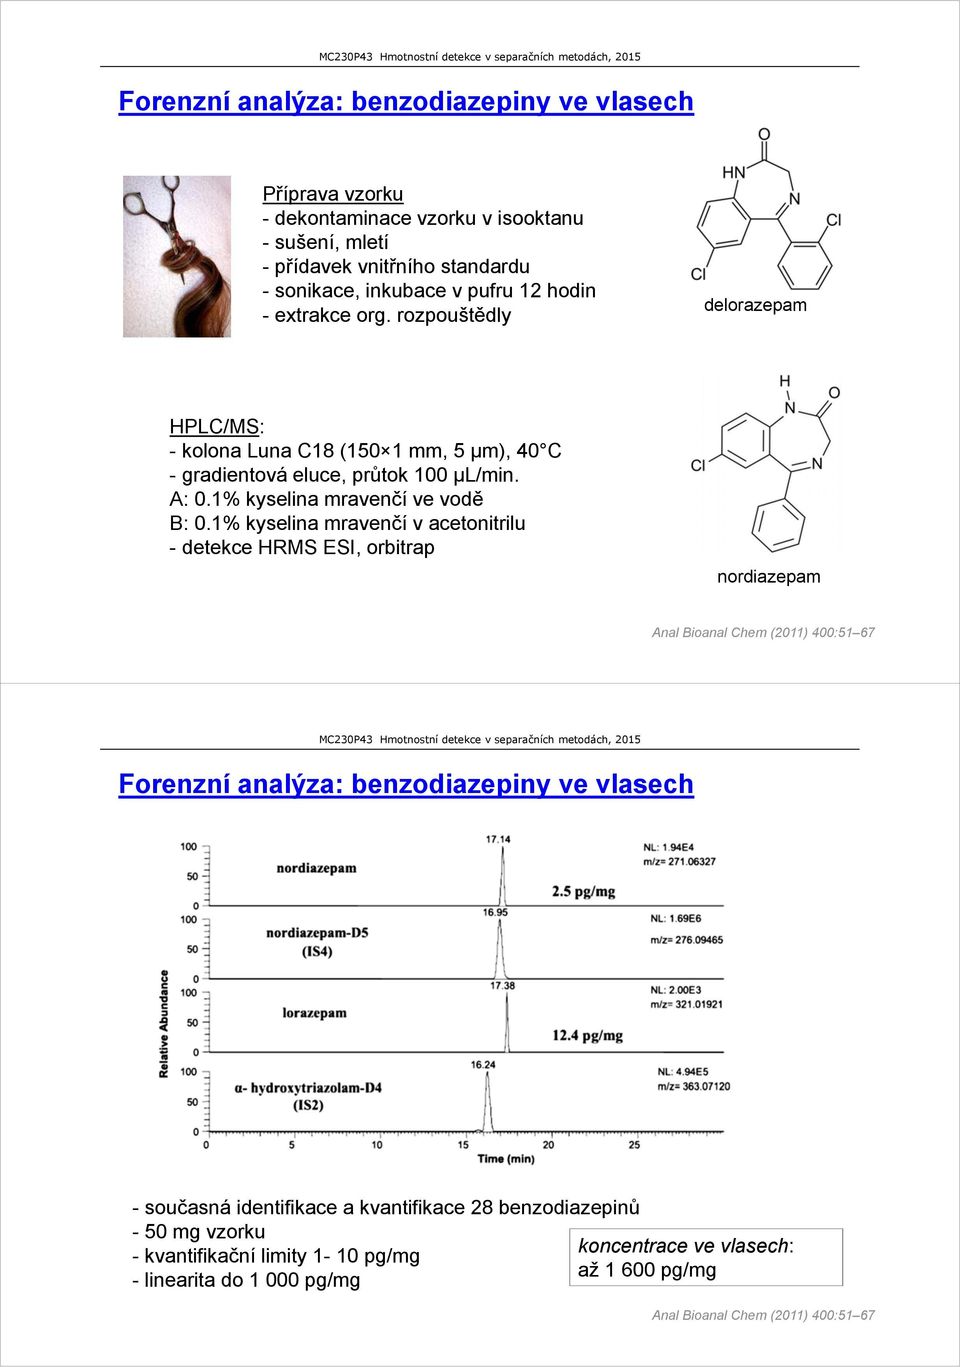 1% kyselina mravenčí v acetonitrilu - detekce HRMS ESI, orbitrap nordiazepam Anal Bioanal Chem (2011) 400:51 67 Forenzní analýza: benzodiazepiny ve vlasech -současná